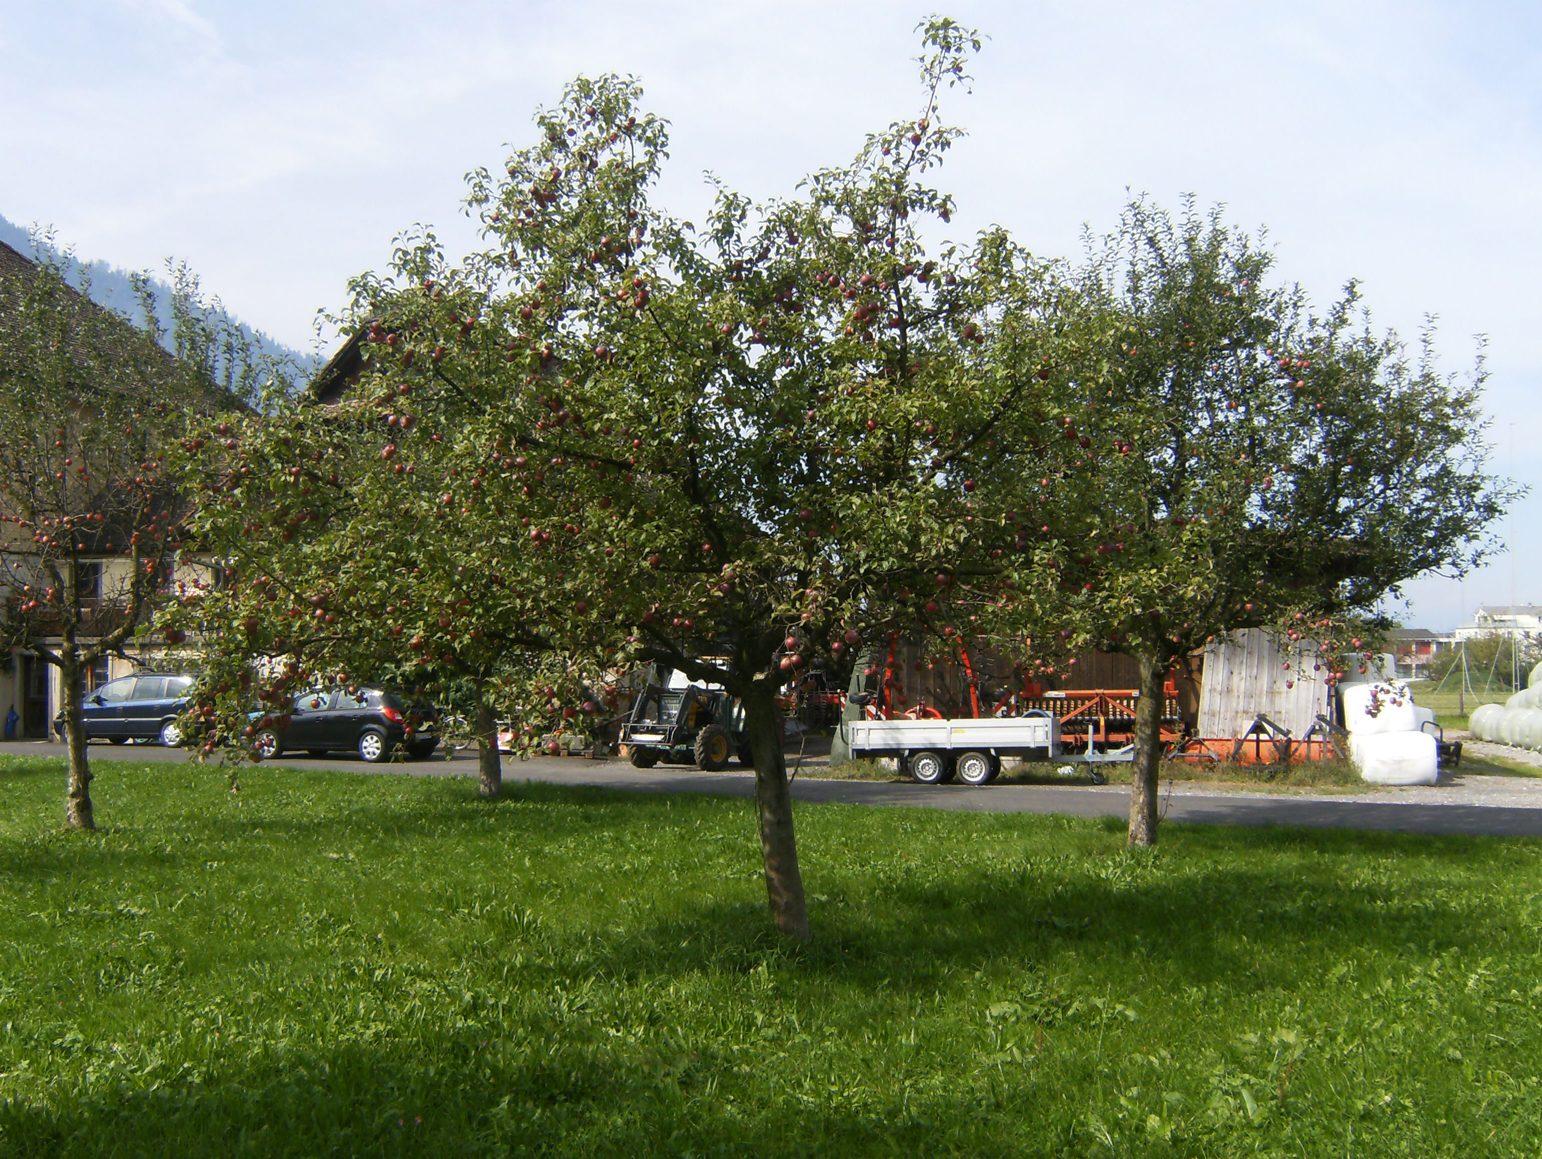 Apple-tree